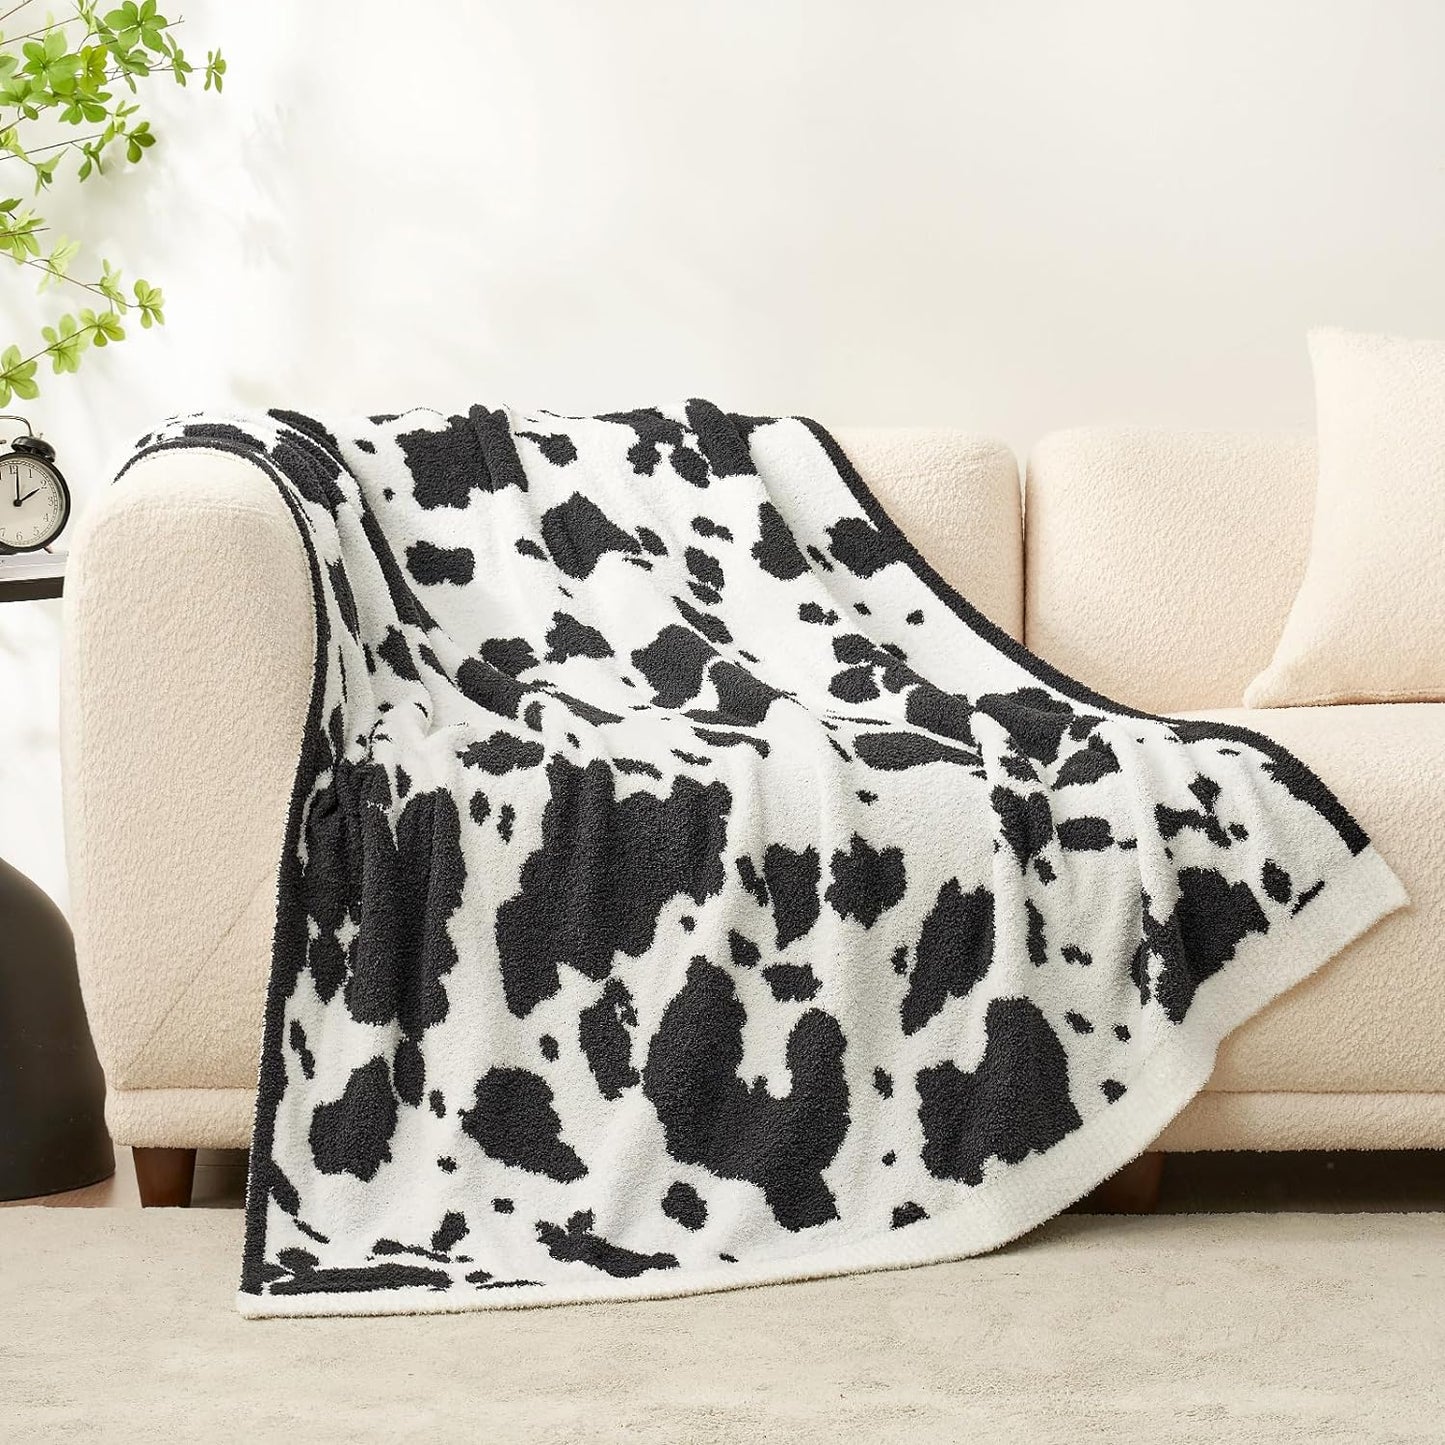 Cow Pattern Blanket